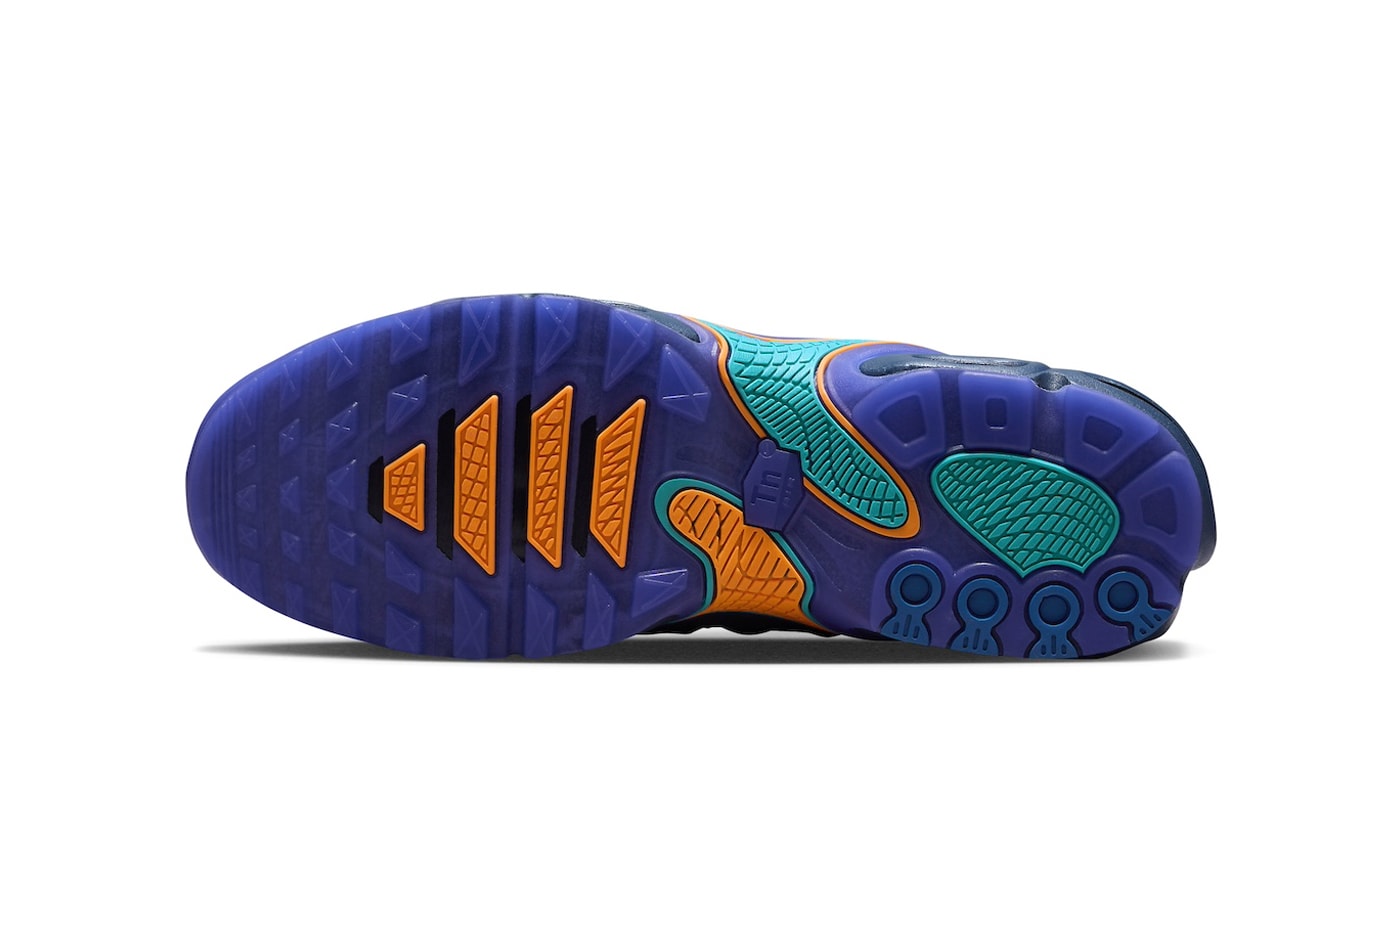 ナイキから新型エアマックスプラスドリフト “ミッドナイトネイビー”が登場 Nike Air Max Plus Drift Surfaces in "Midnight Navy" FD4290-400 release info total orange air max day sneaker comfort swoosh colorful eclectic